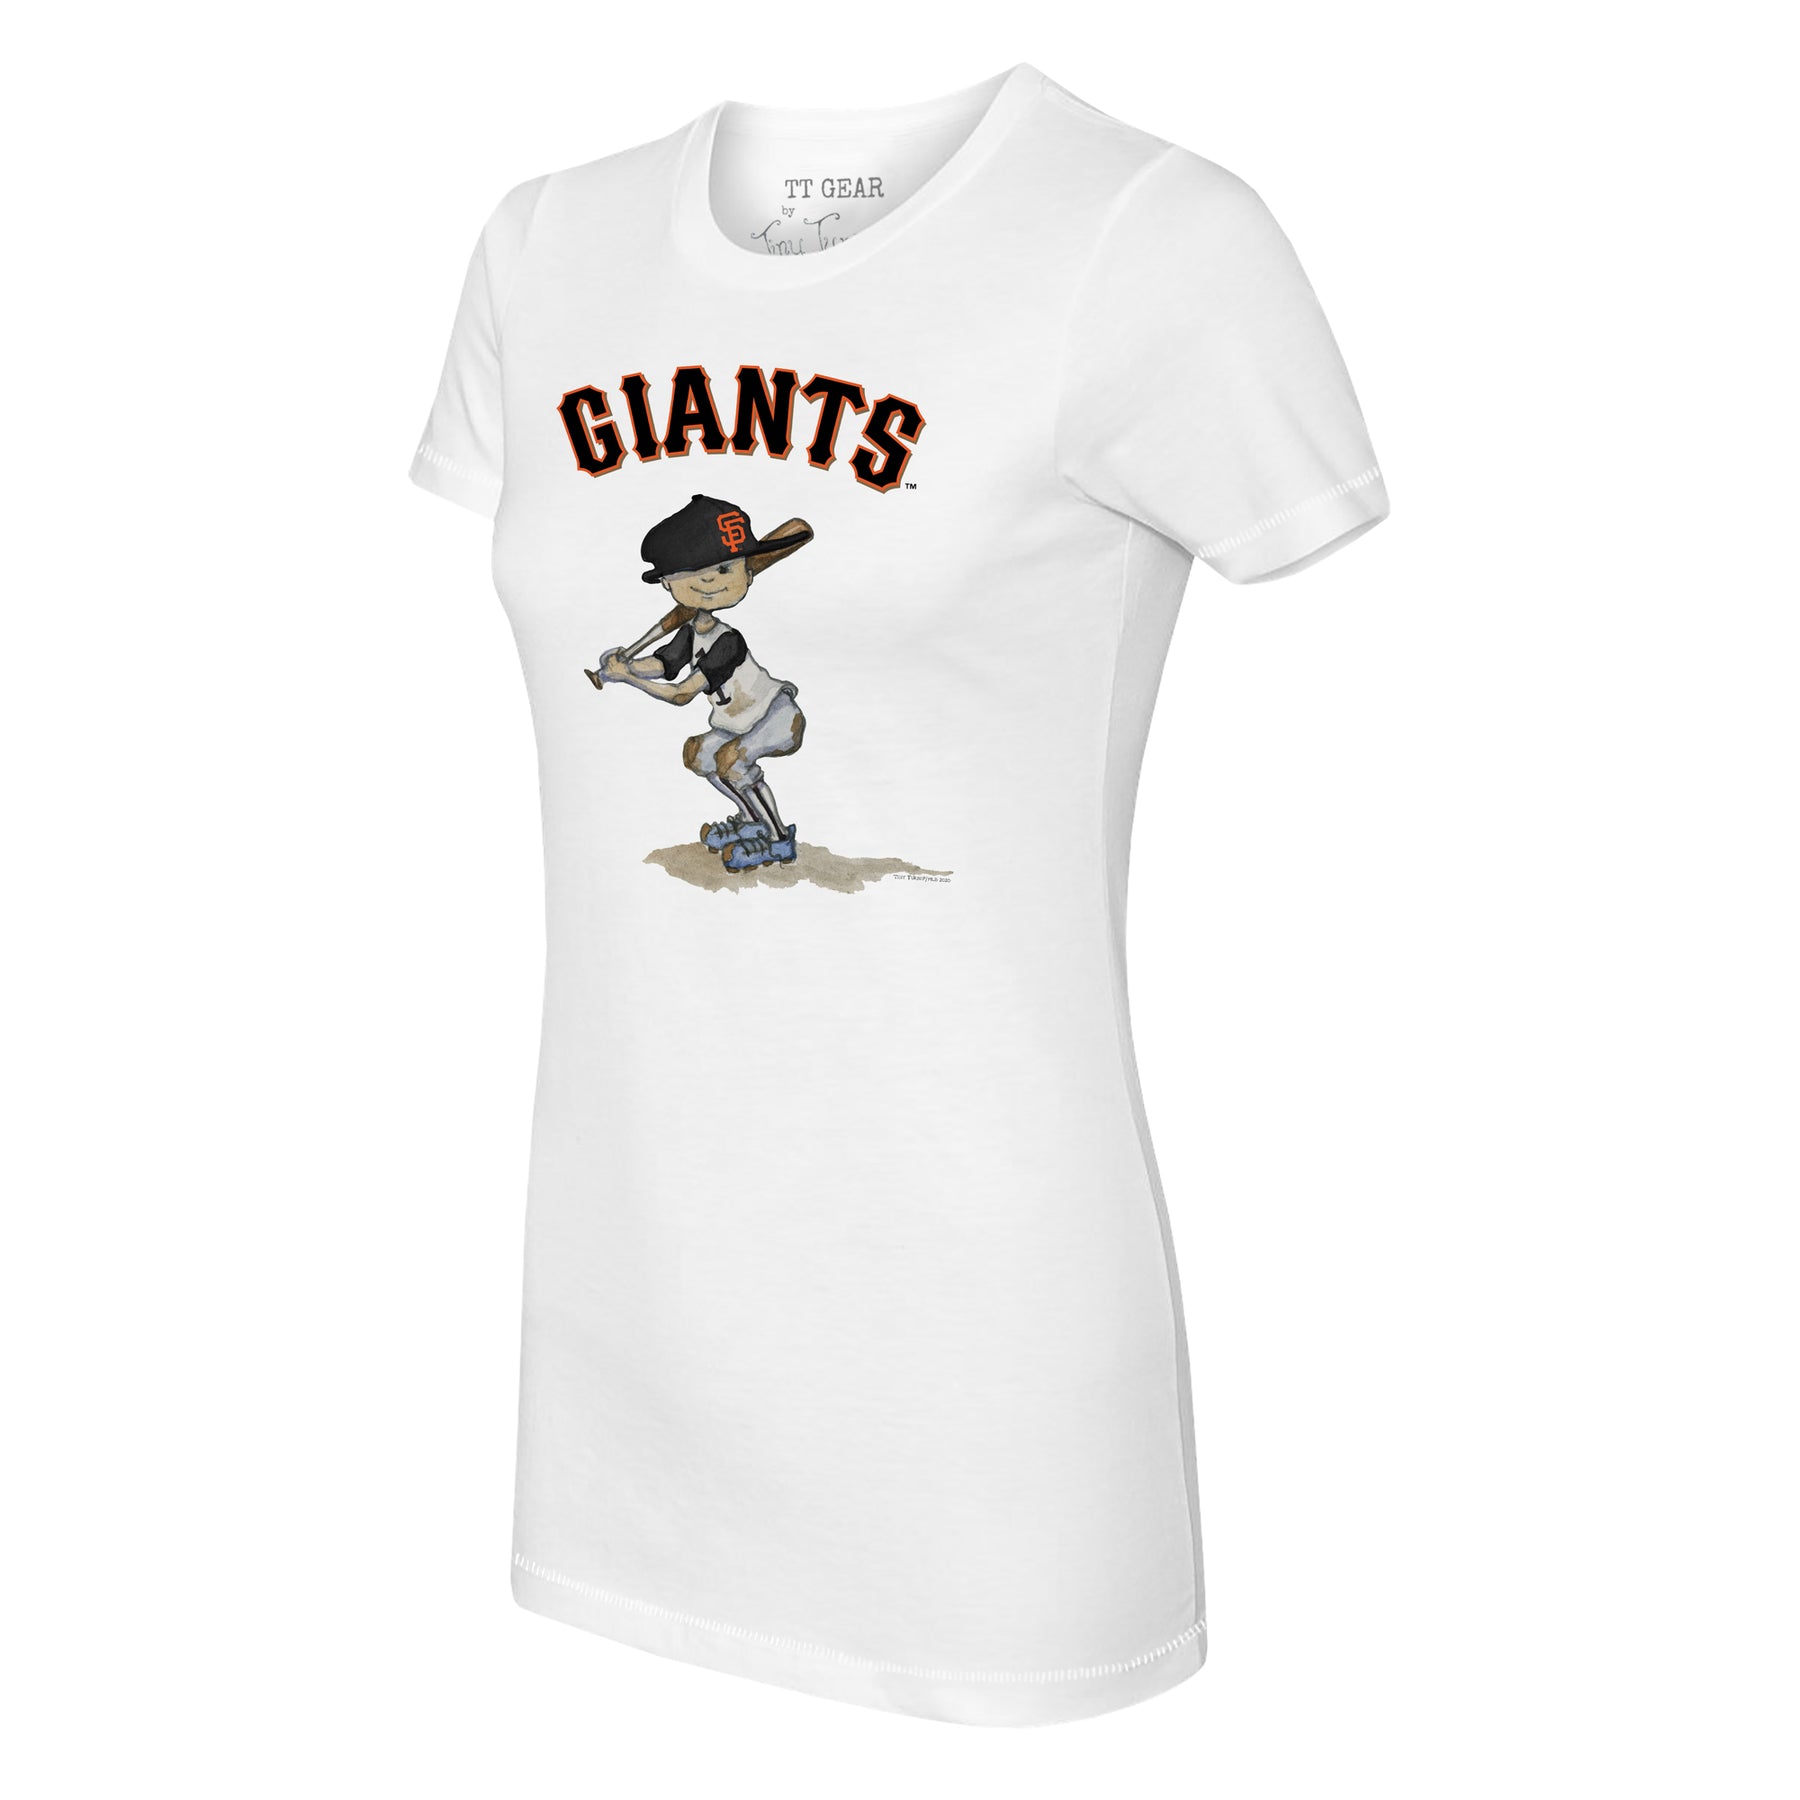 San Francisco Giants Slugger Tee Shirt